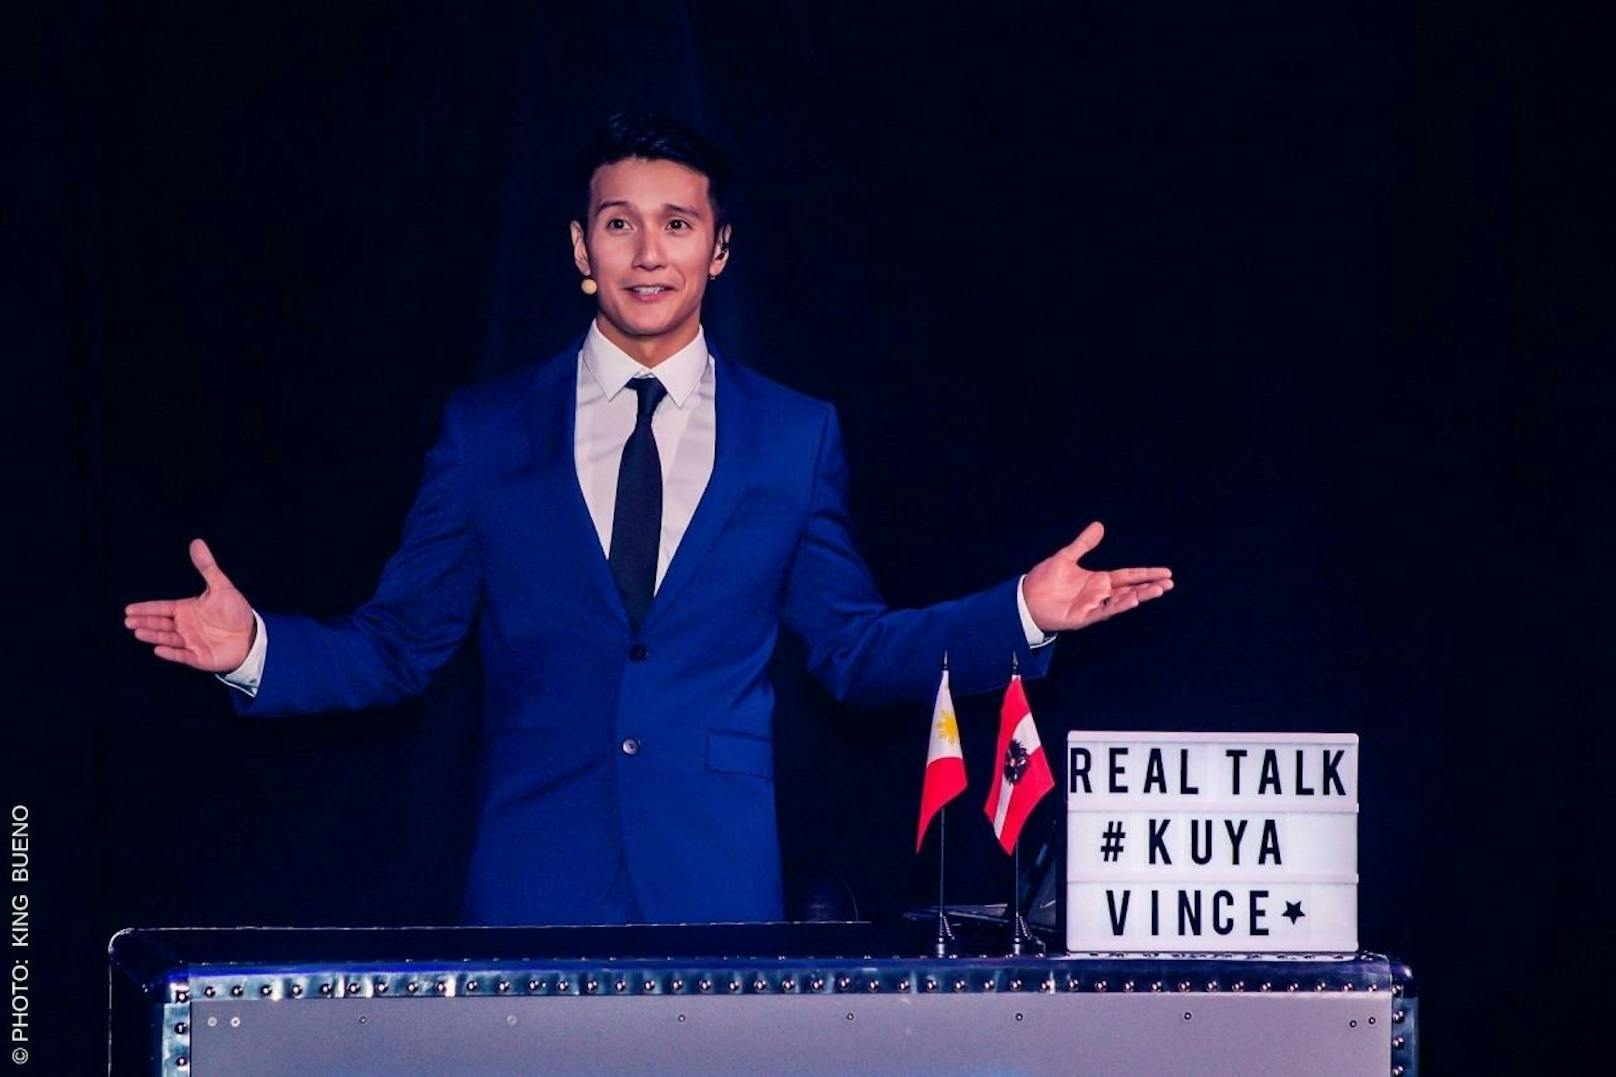 Auch ein neues Show-Format wurde an diesem Abend vorgestellt: "Real Talk mit Kuya Vince".